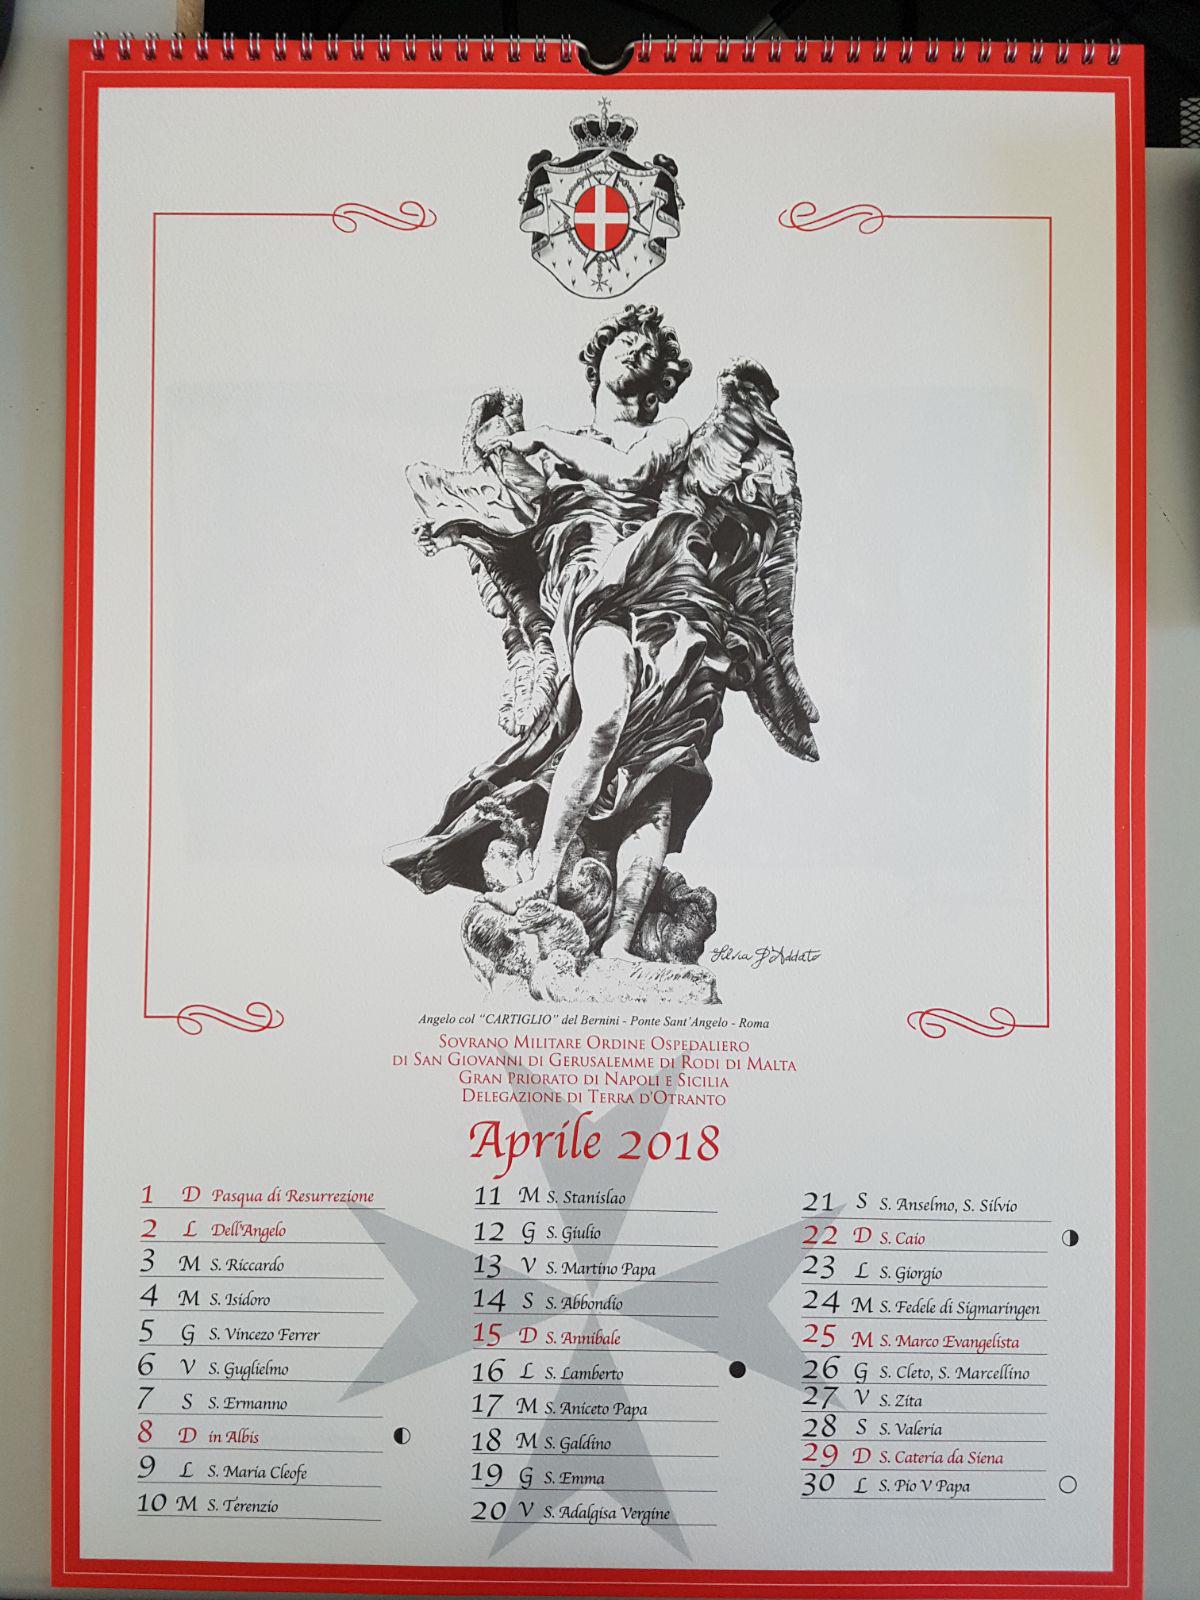 2017 12 05 Taranto Calendario d’Arte 2018 del S.M. Ordine di Malta